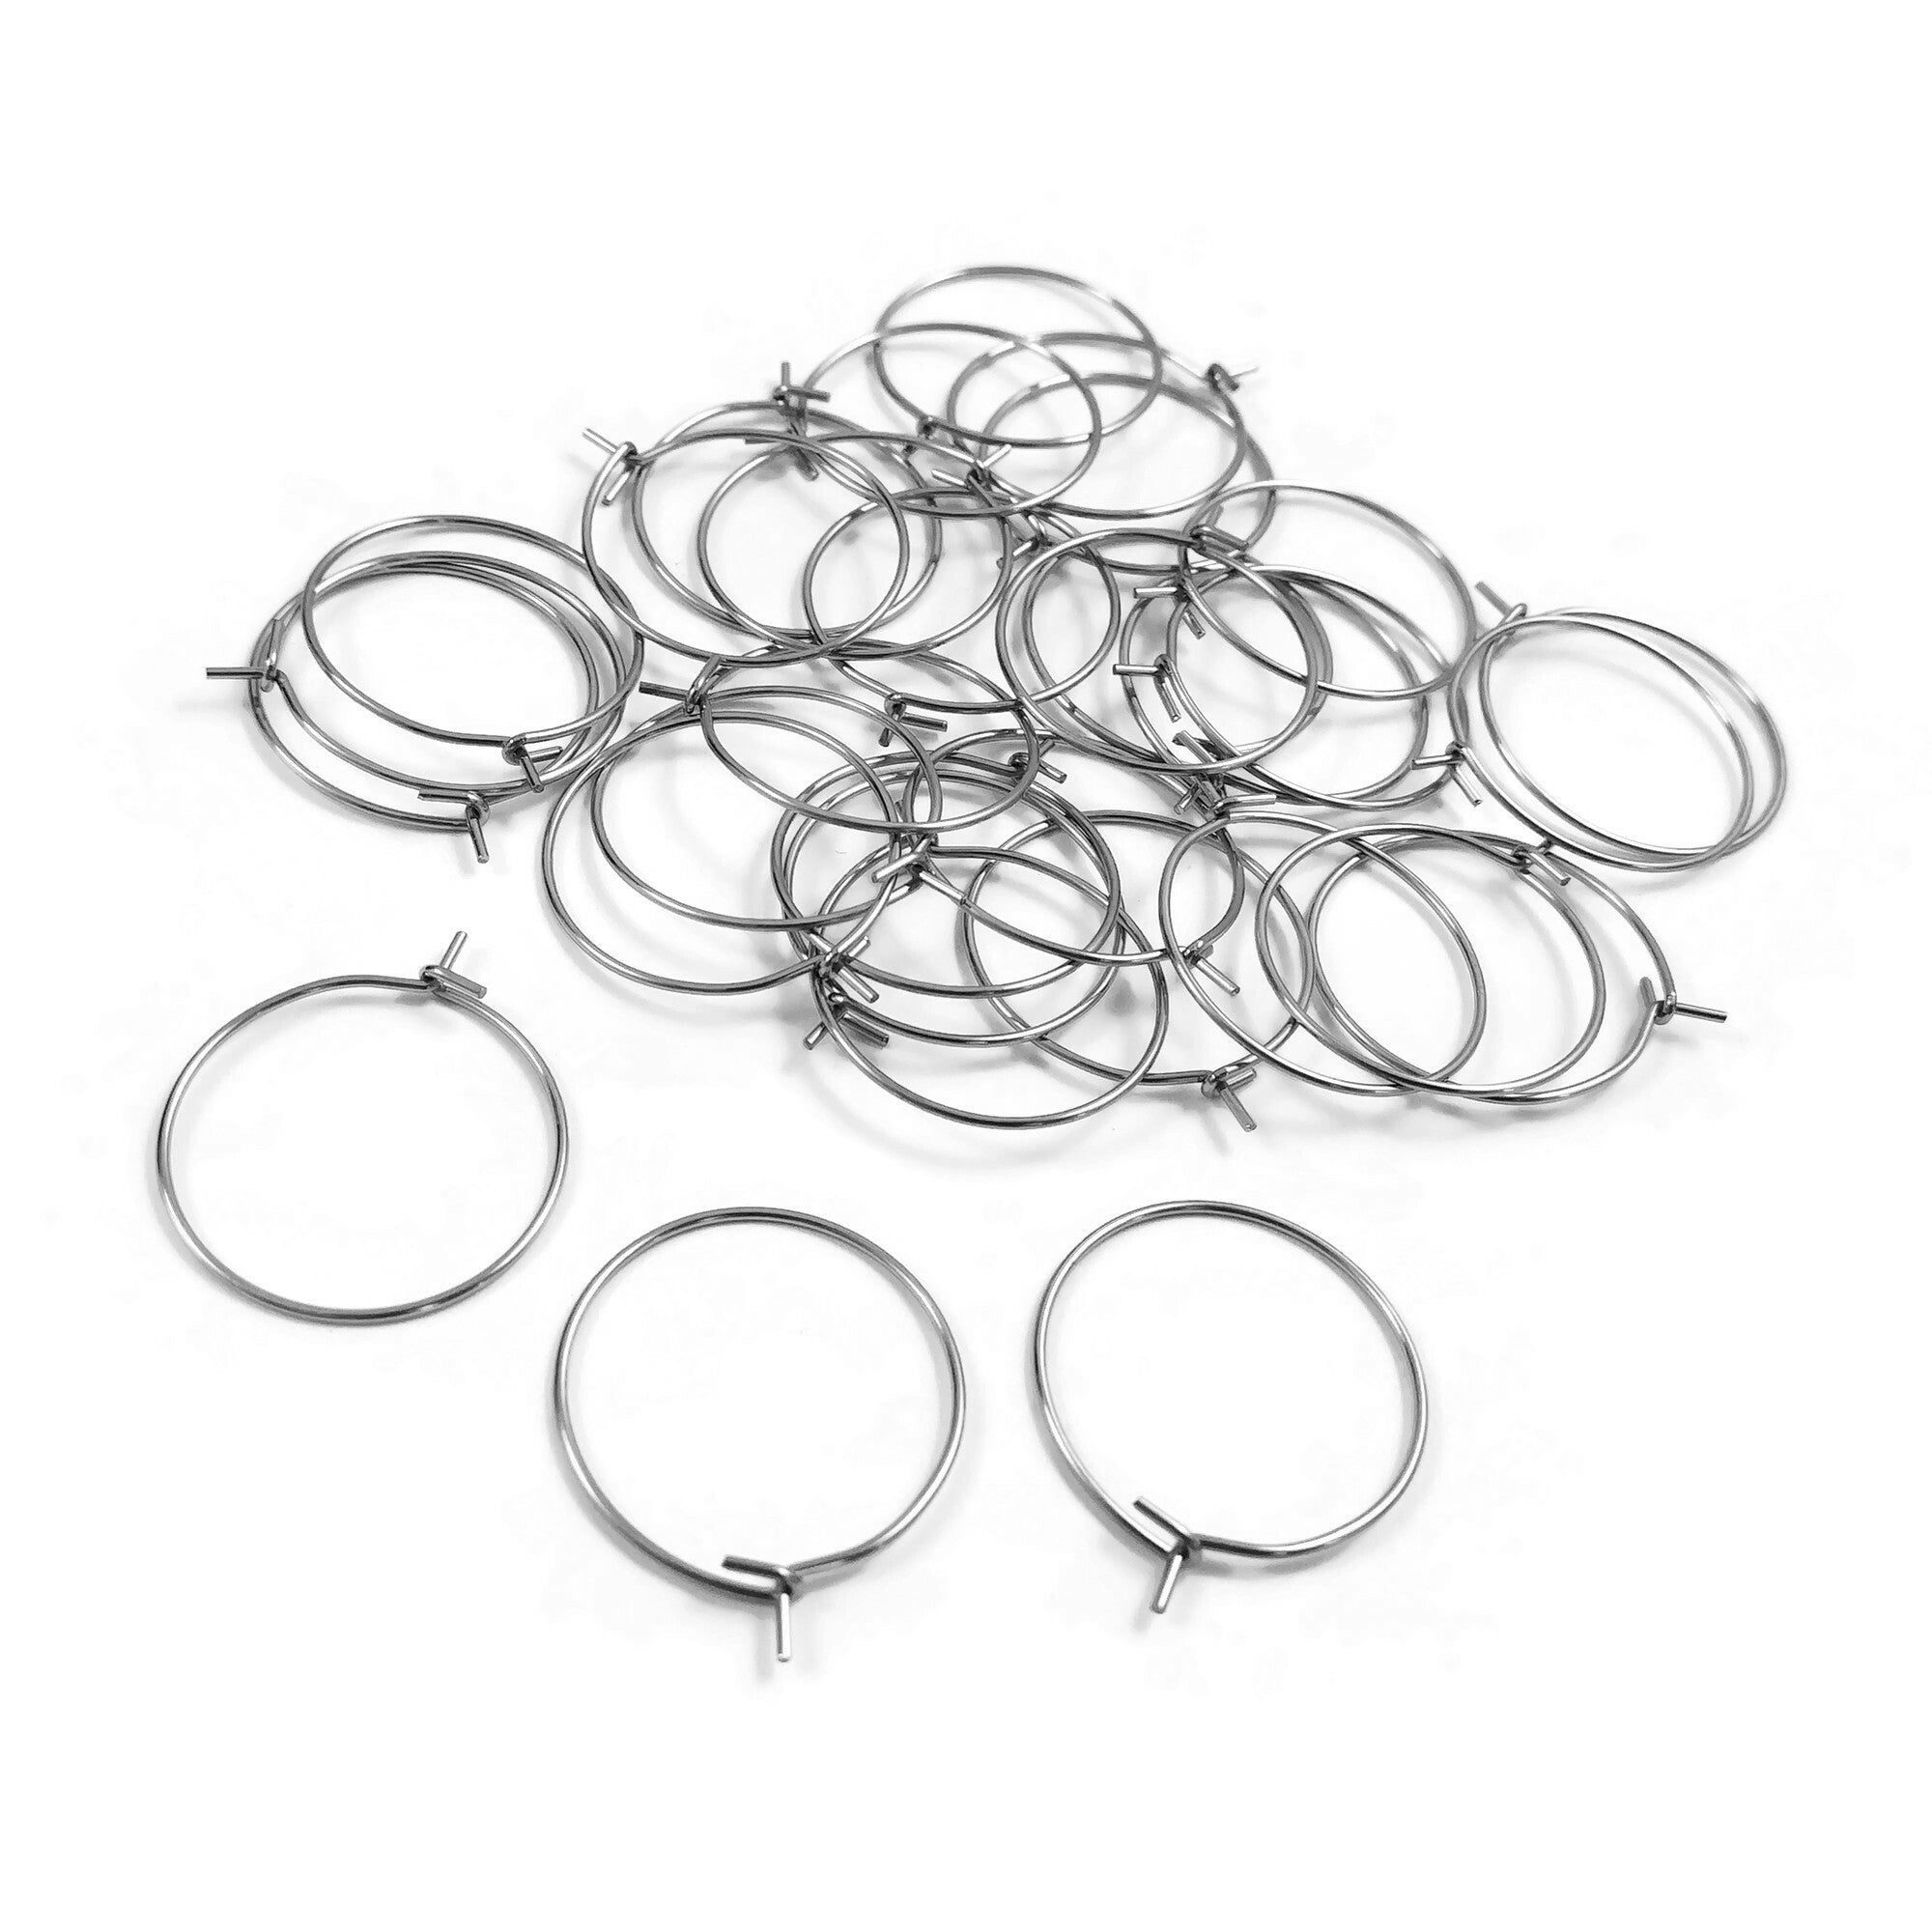 Hypoallergenic Earring Making Kit, 2000pcs Earring Making Supplies Kit With  Hypoallergenic Earring Hooks, Earring Findings by Fablise Craft 